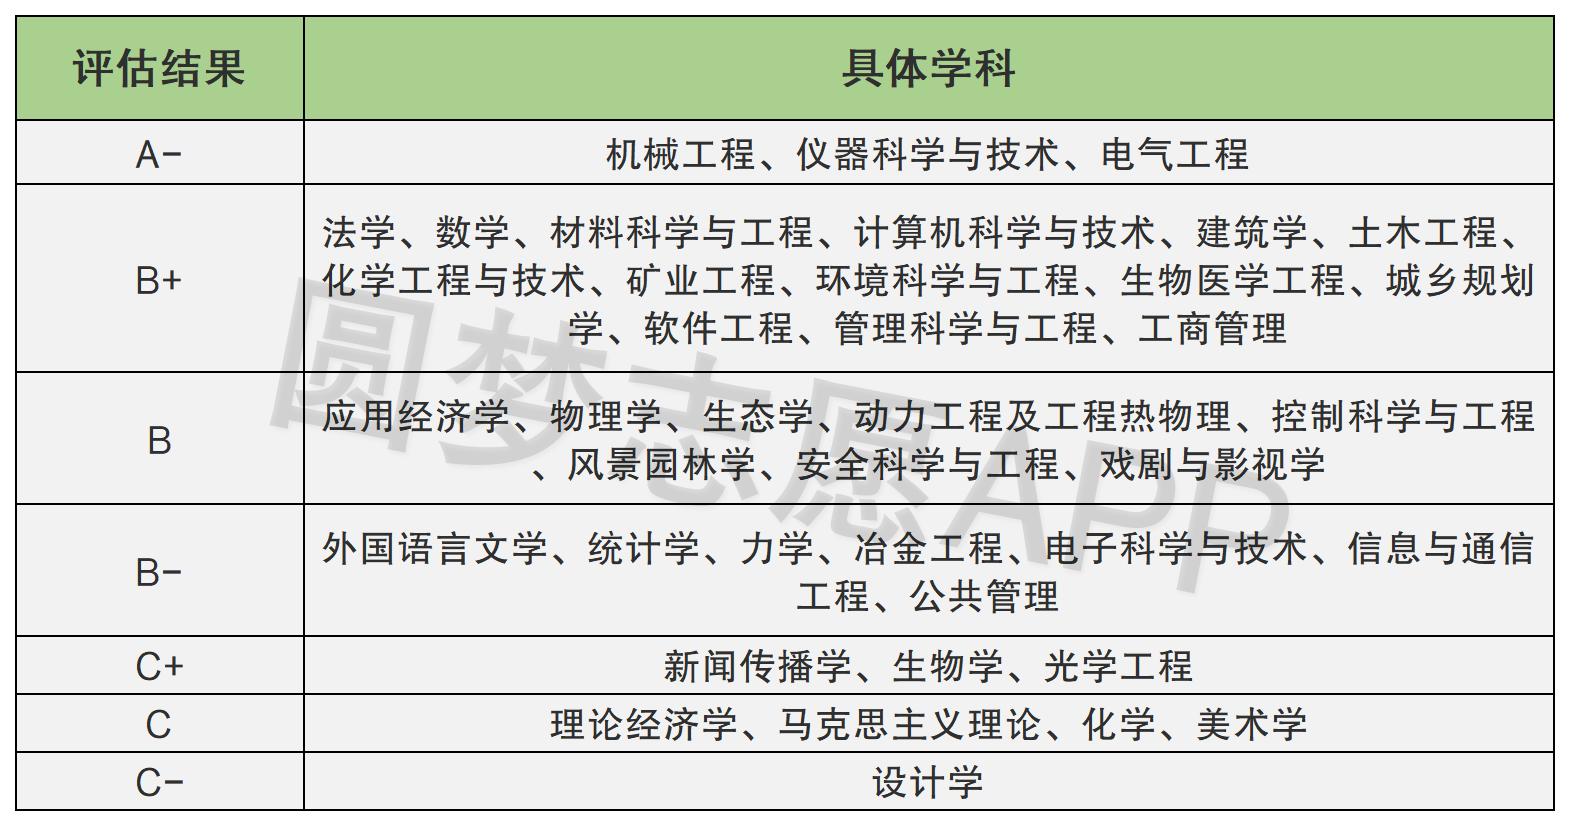 重庆大学是什么水平的大学 2021重庆大学有哪些王牌专业